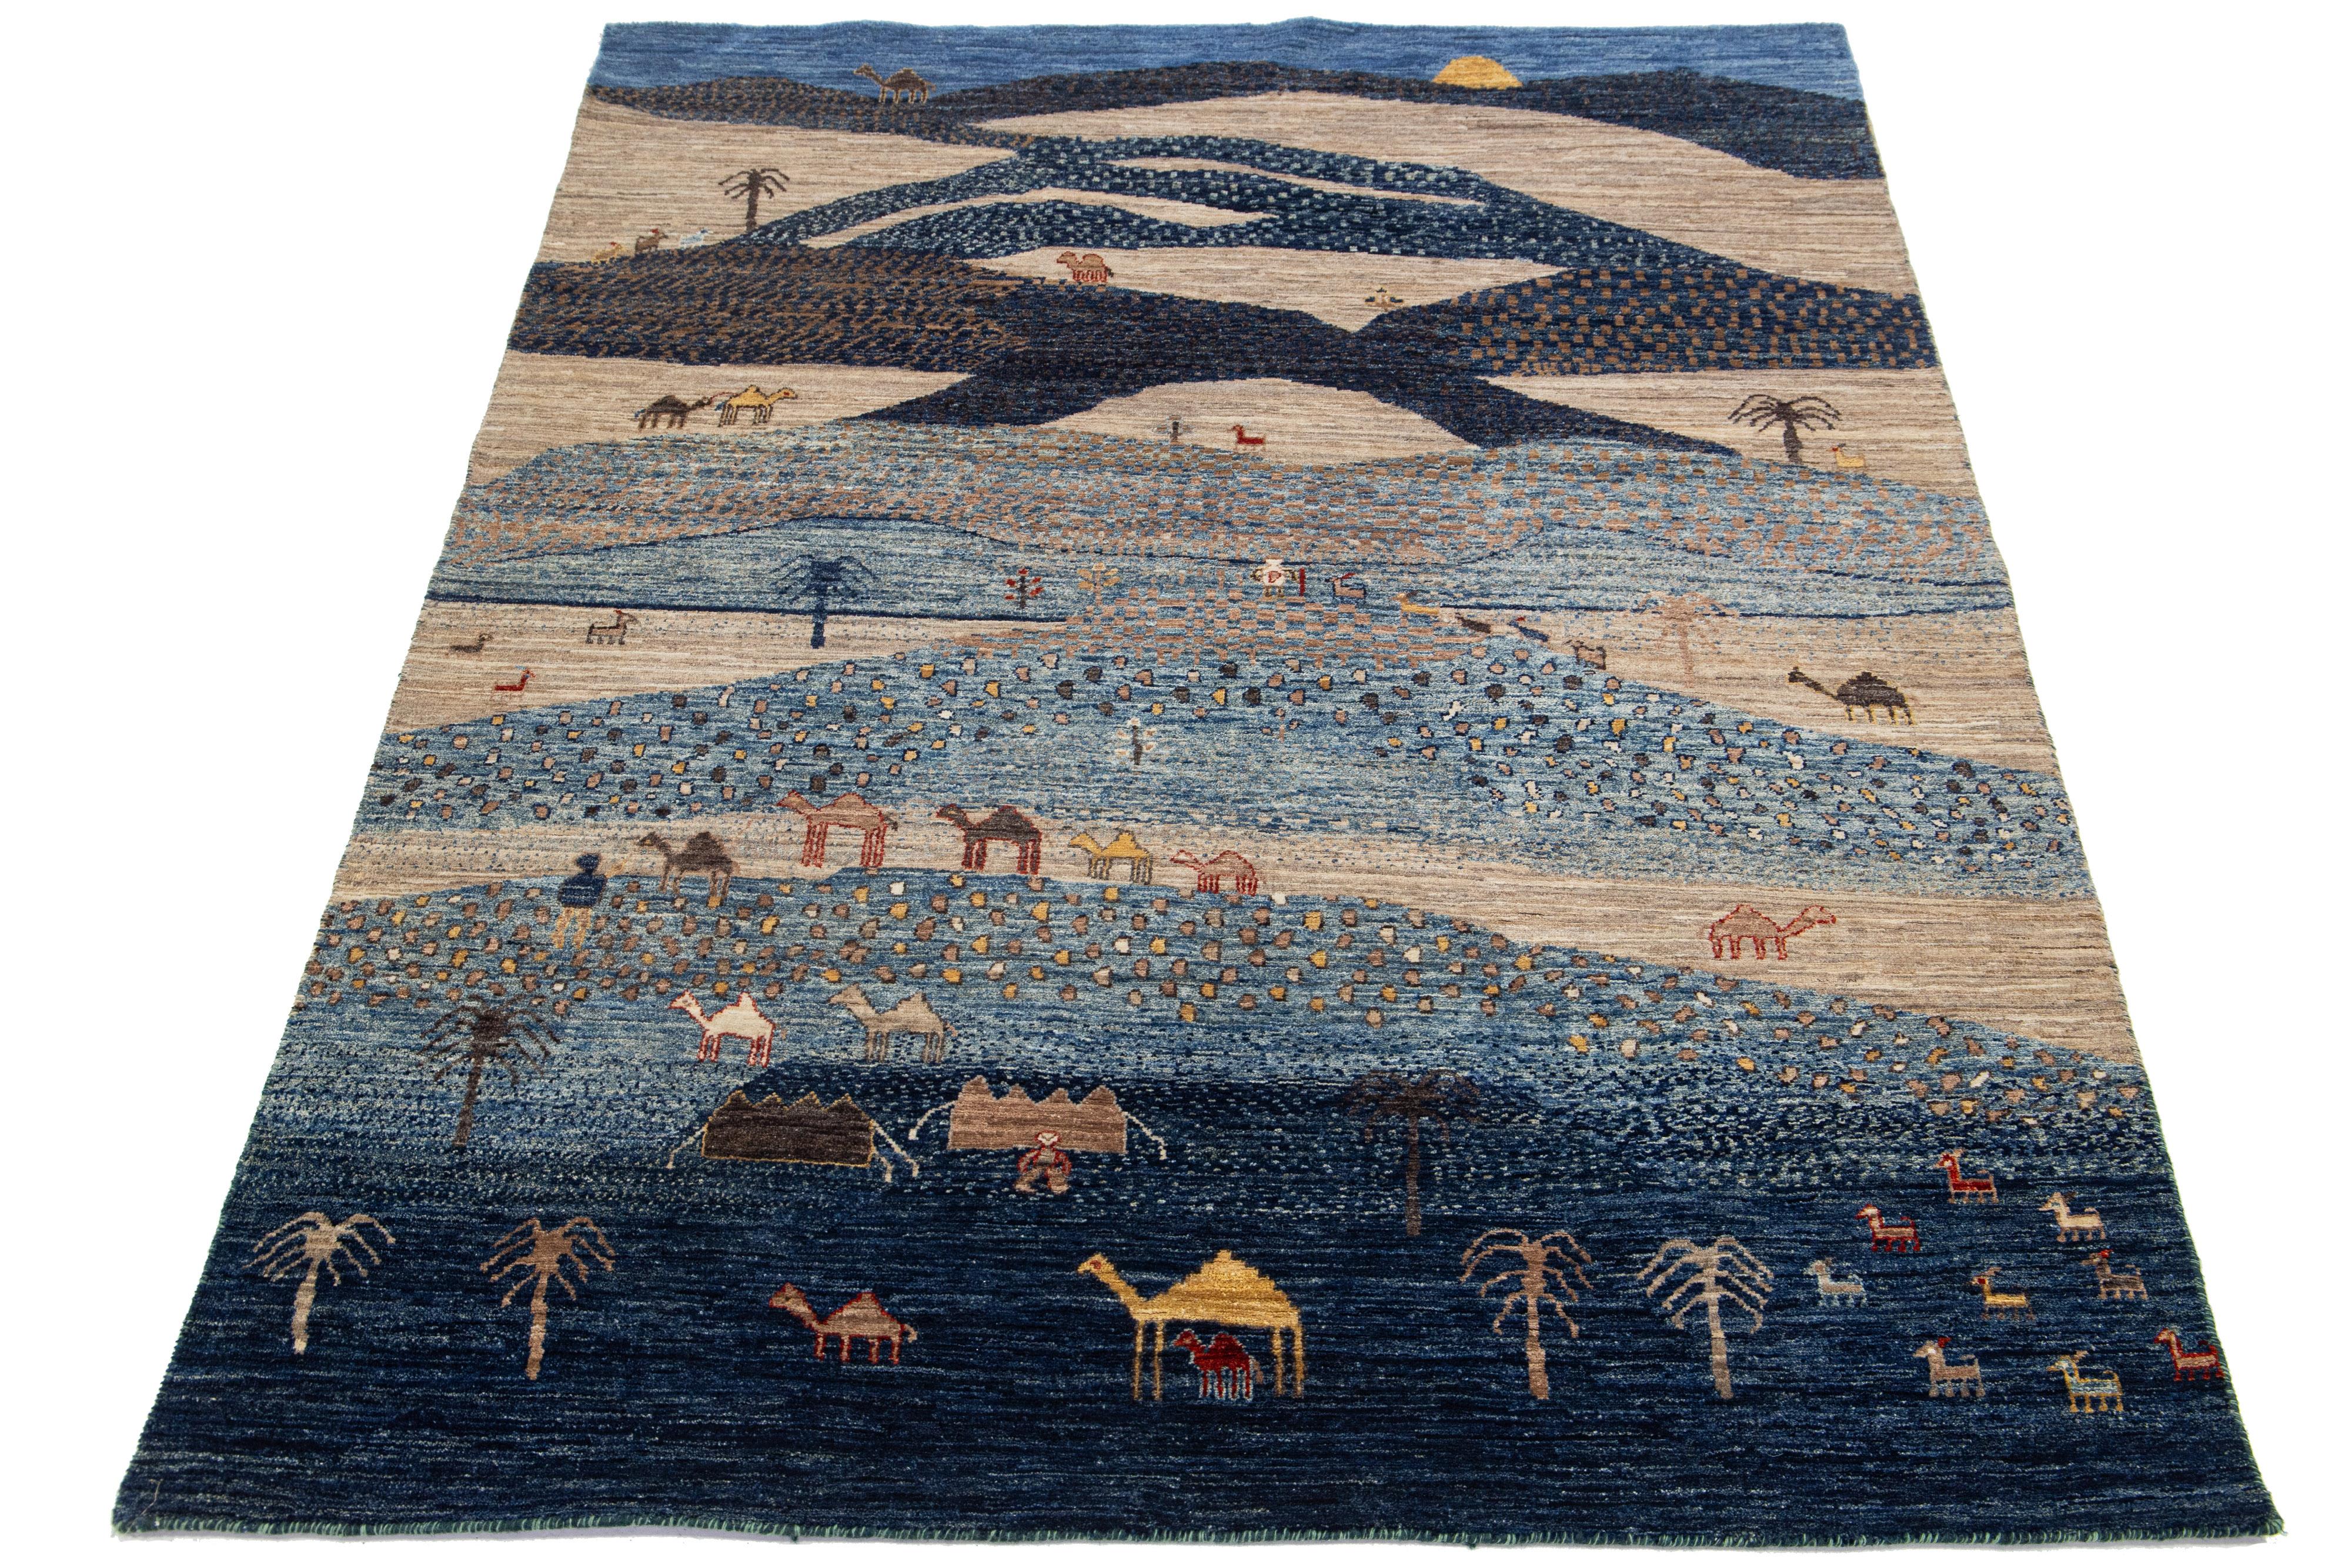 Ce tapis en laine et soie fabriqué à la main, conçu dans le style Gabbeh, présente un motif pictural accentué par différentes nuances sur un fond bleu vibrant.

Ce tapis mesure 4'10